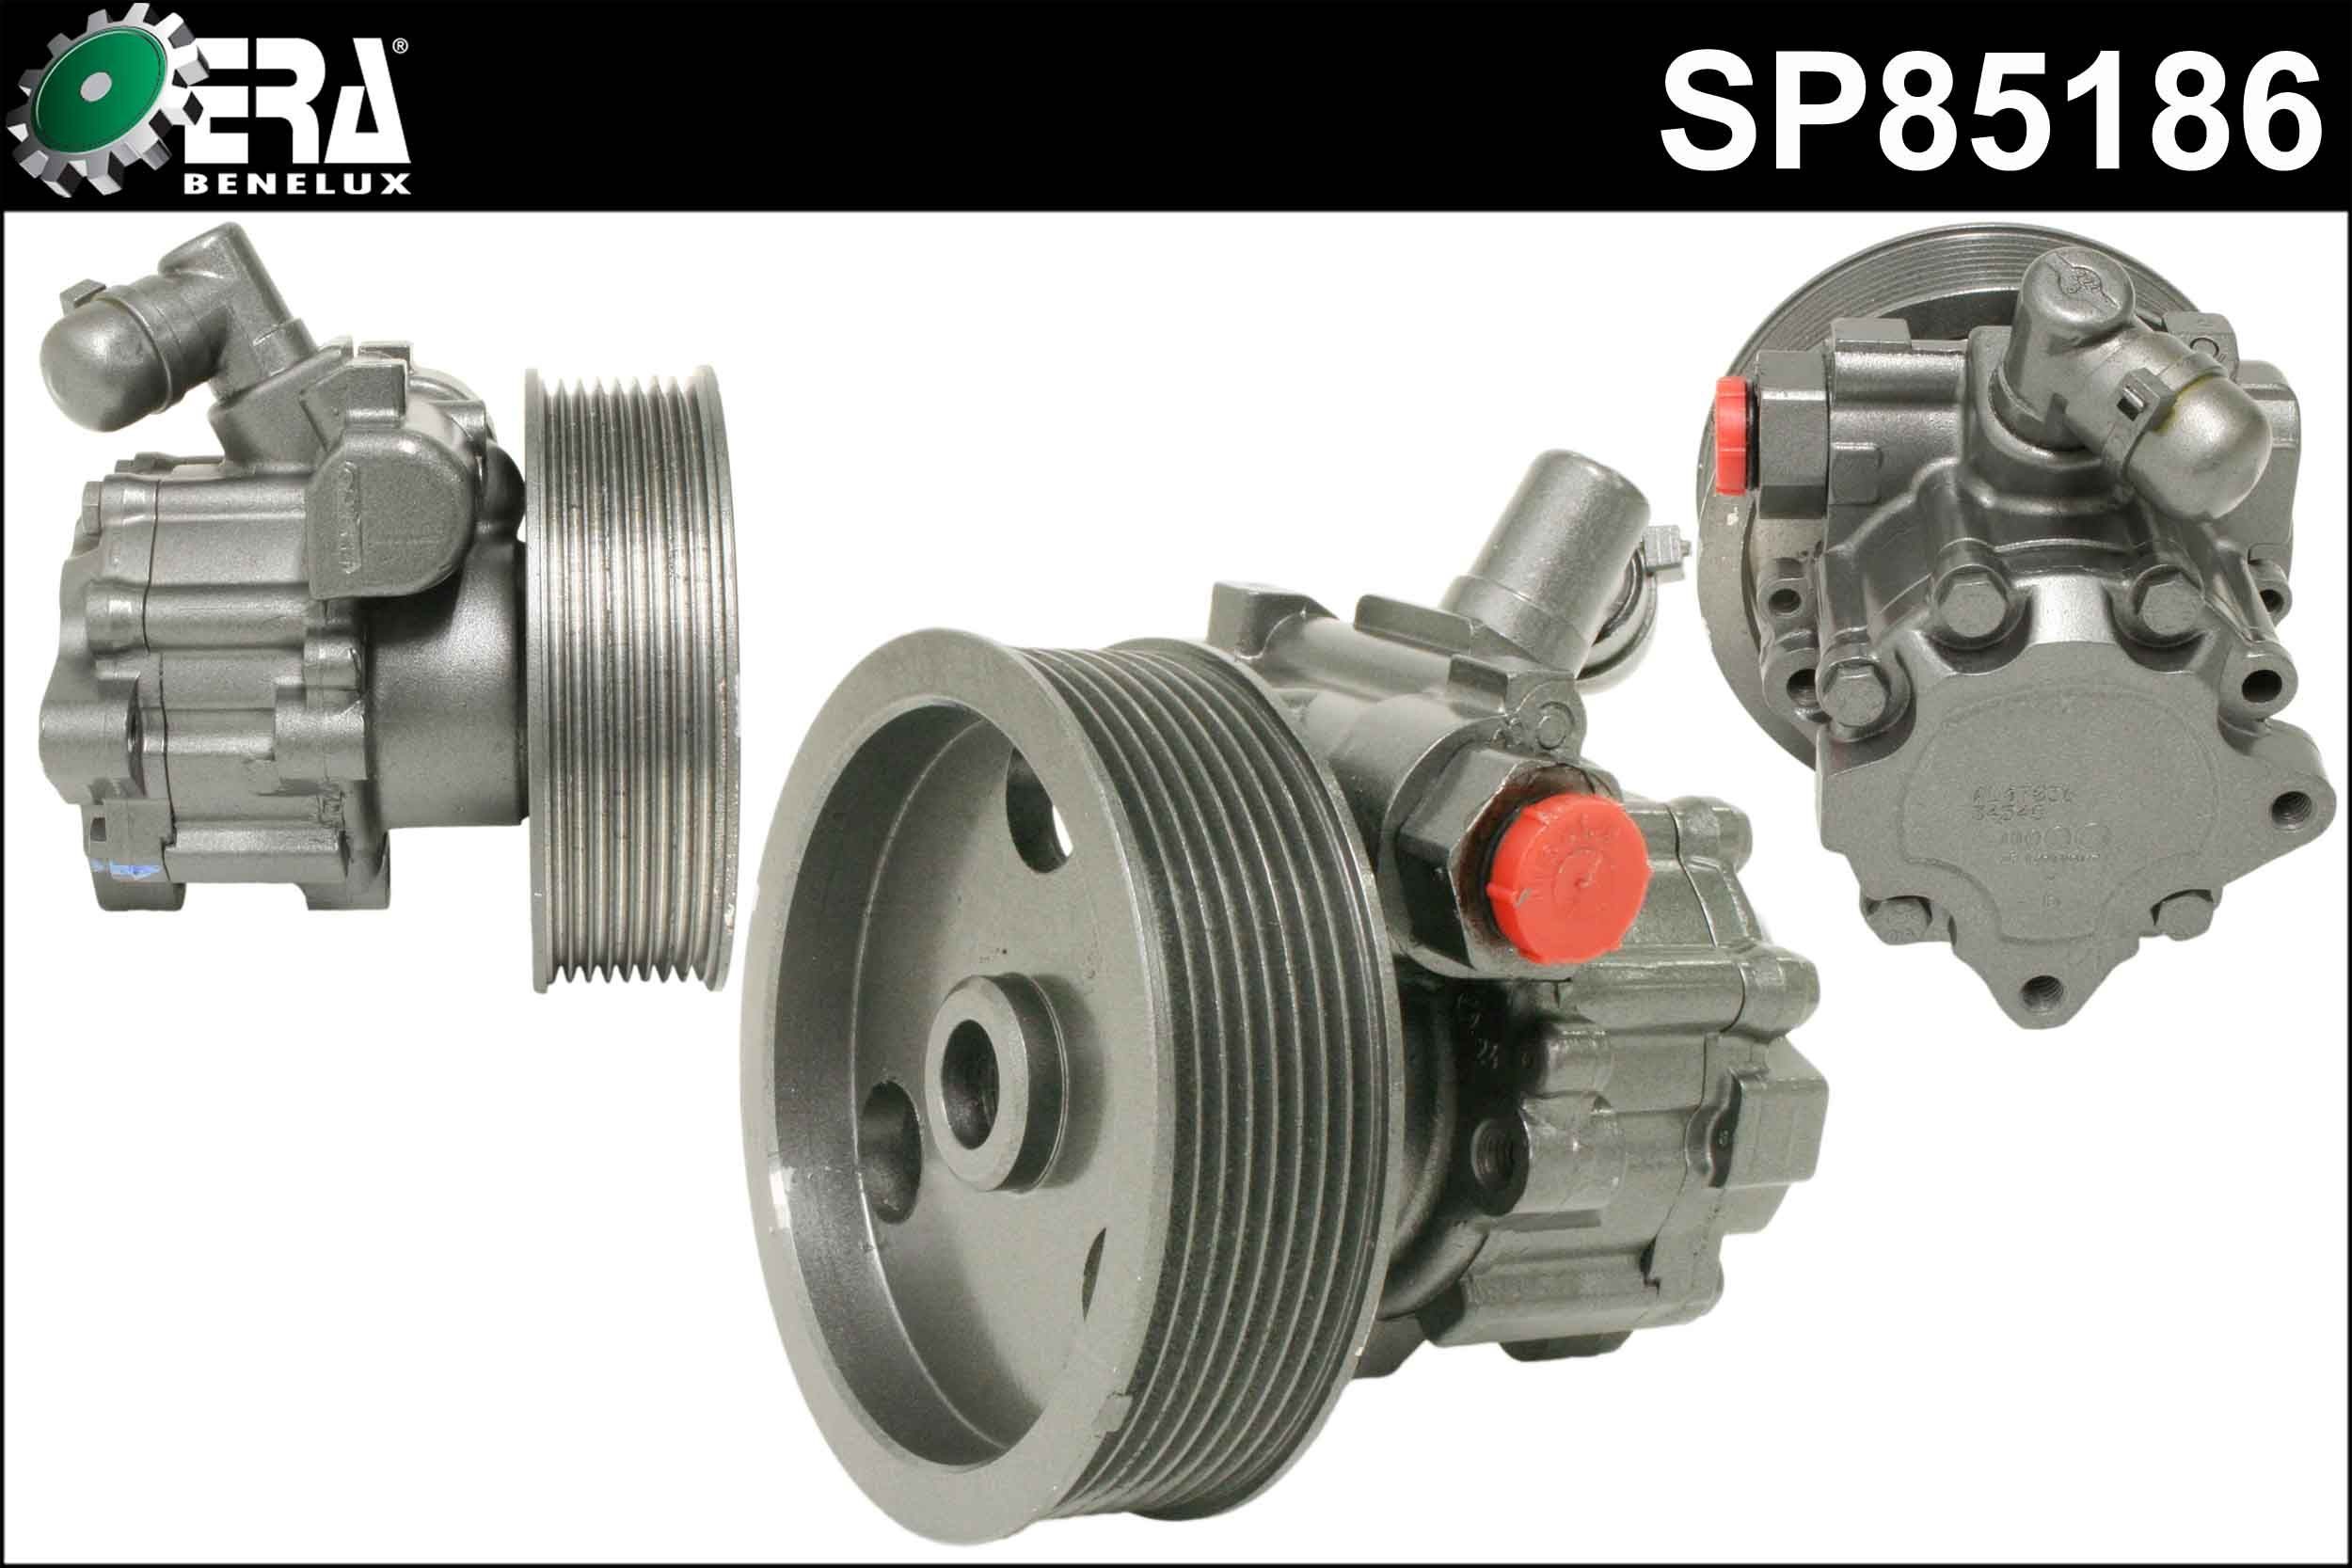 ERA Benelux SP85186 Steering pump W164 ML 280 CDI 3.0 4-matic 190 hp Diesel 2007 price